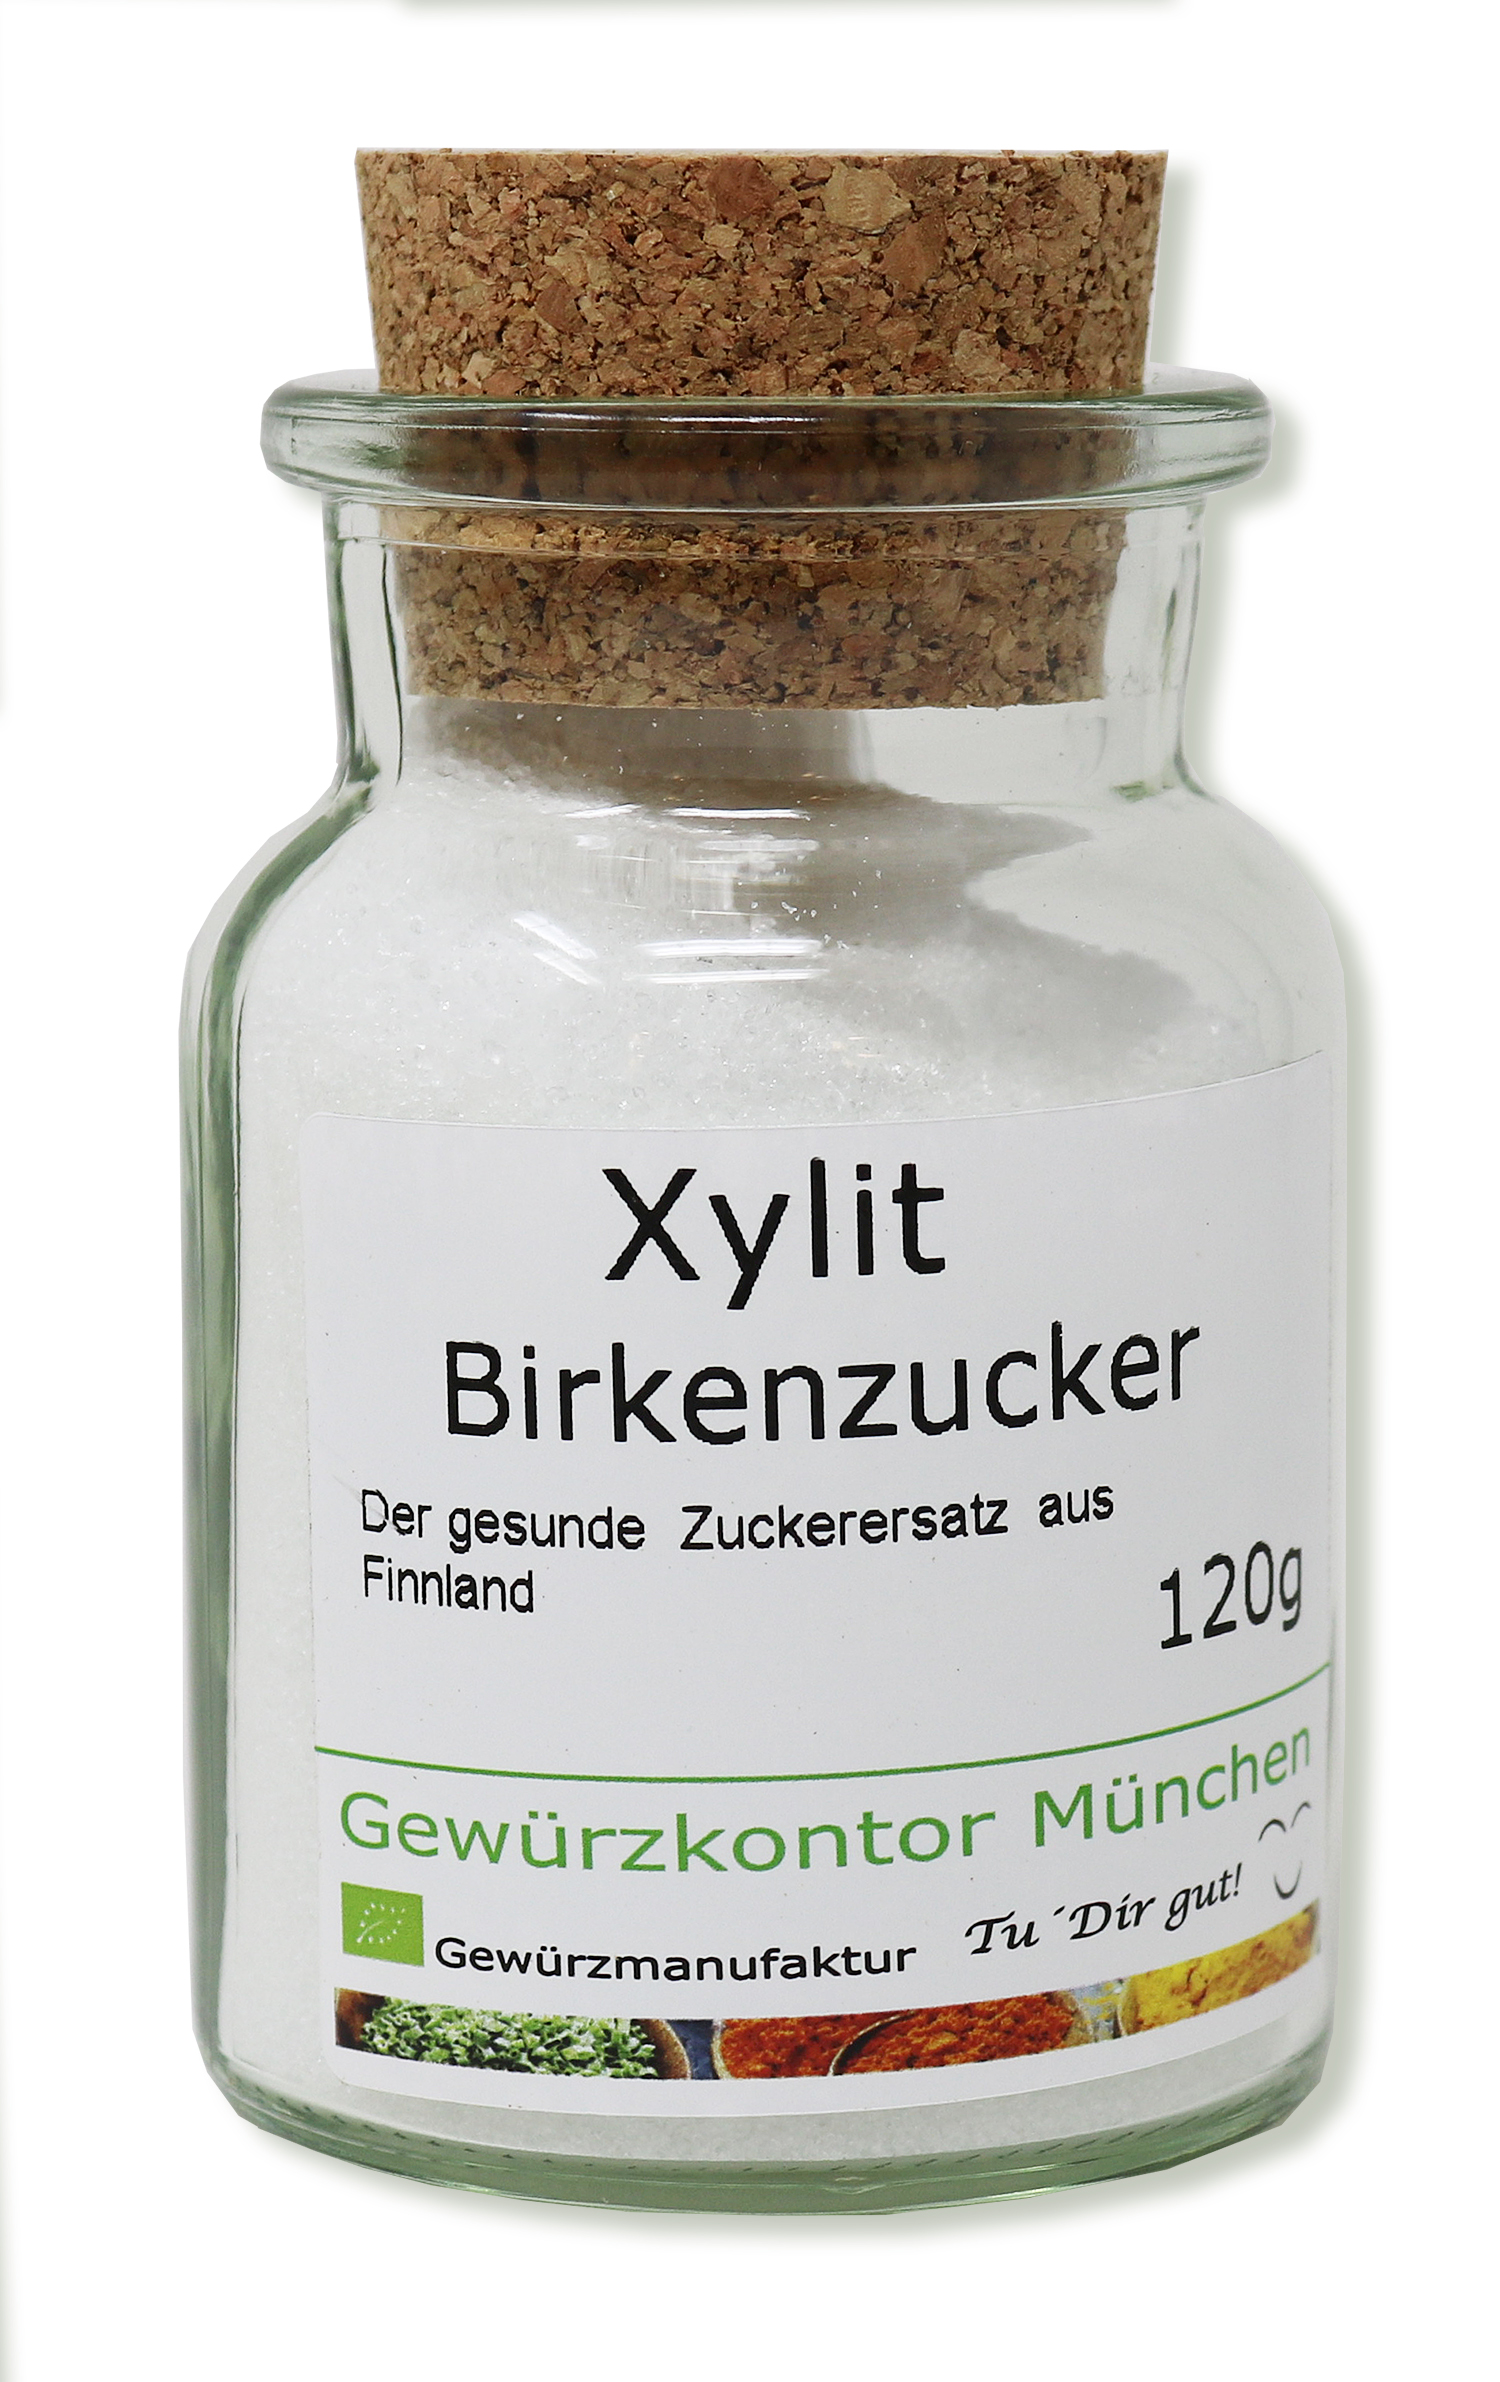 Xylit Birkenzucker aus Finnland 120g im Glas